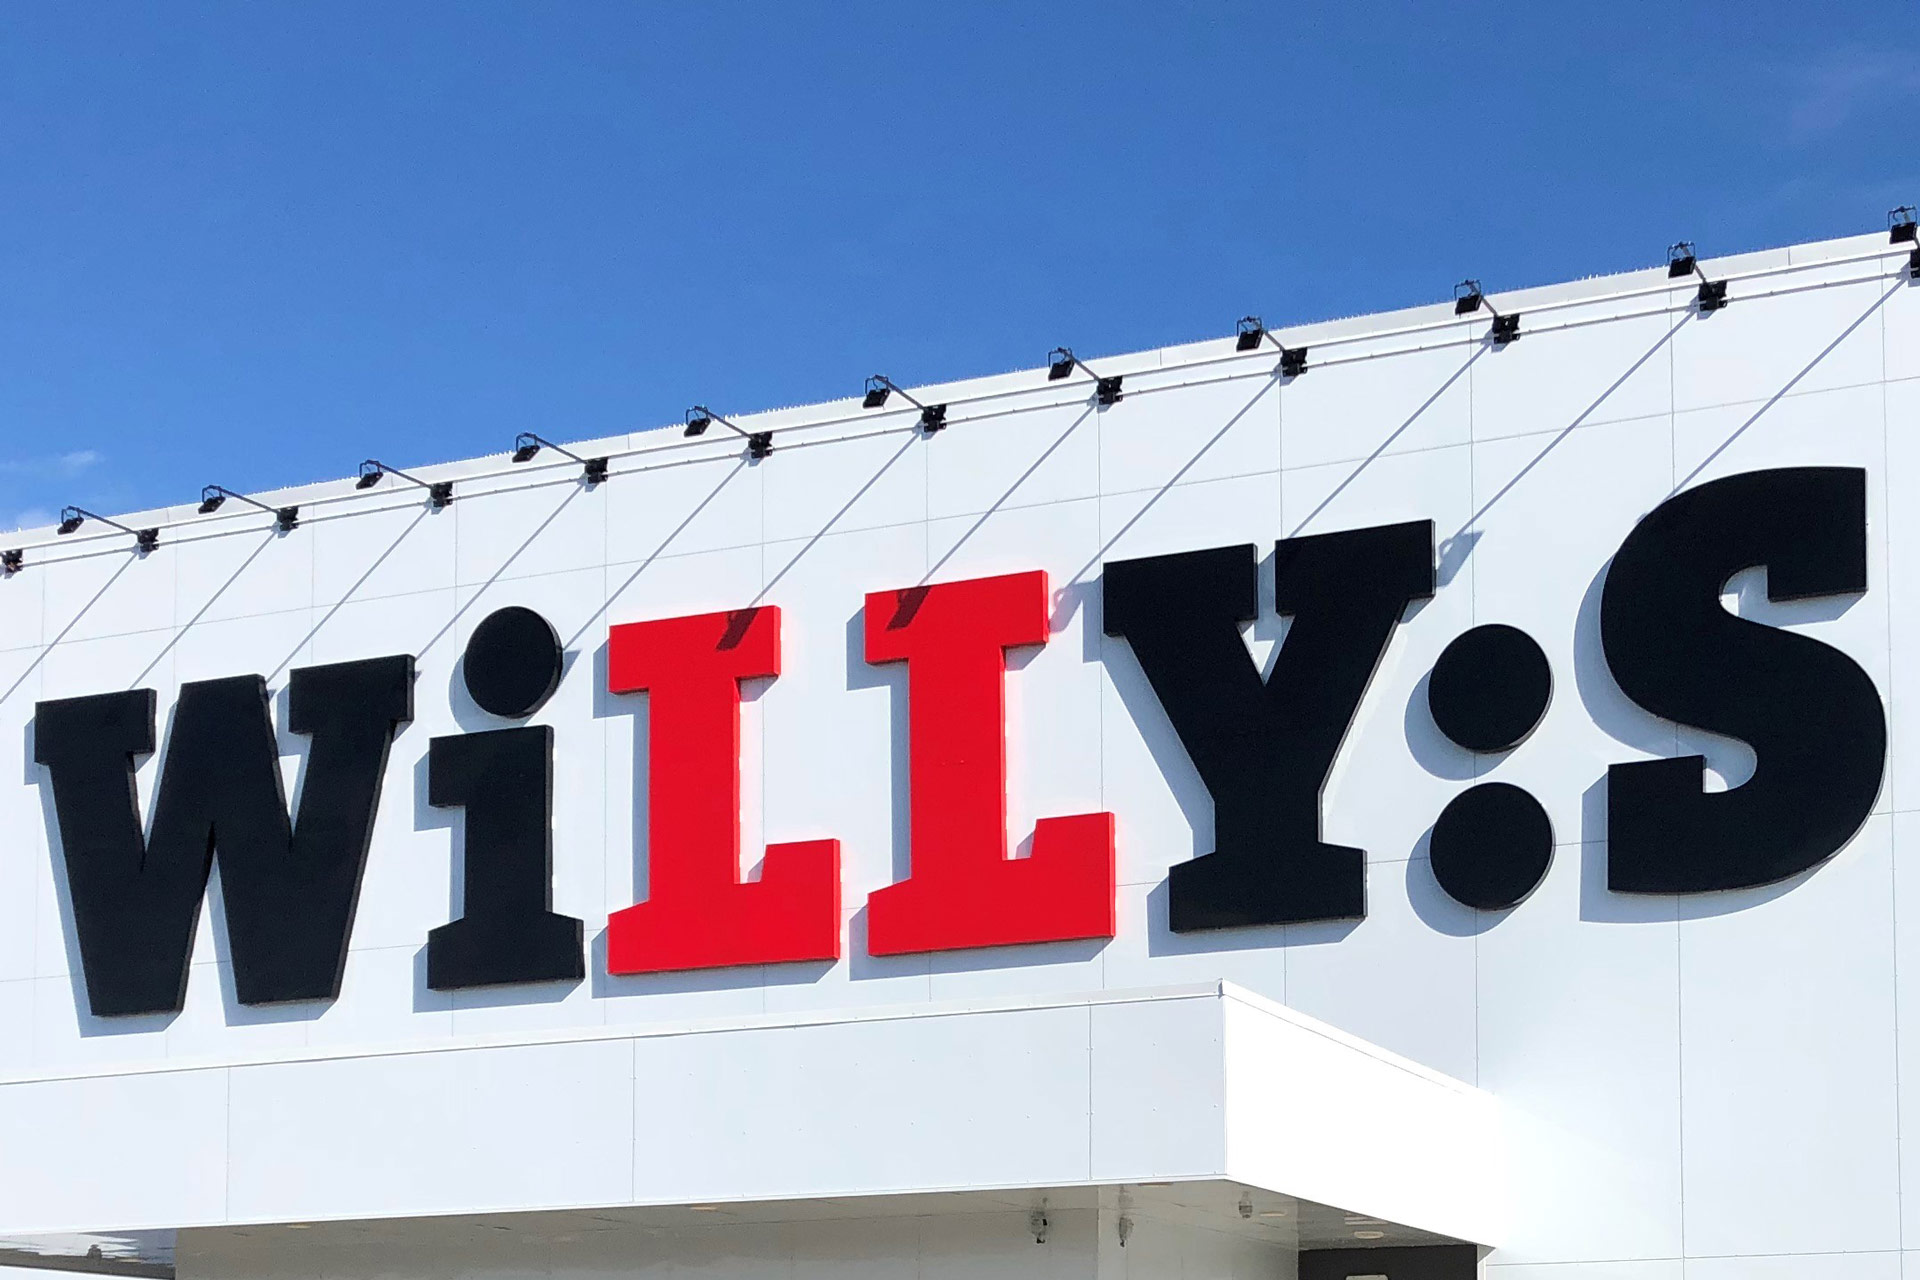 Willys omlokaliserar – ny butik i Hultsfred